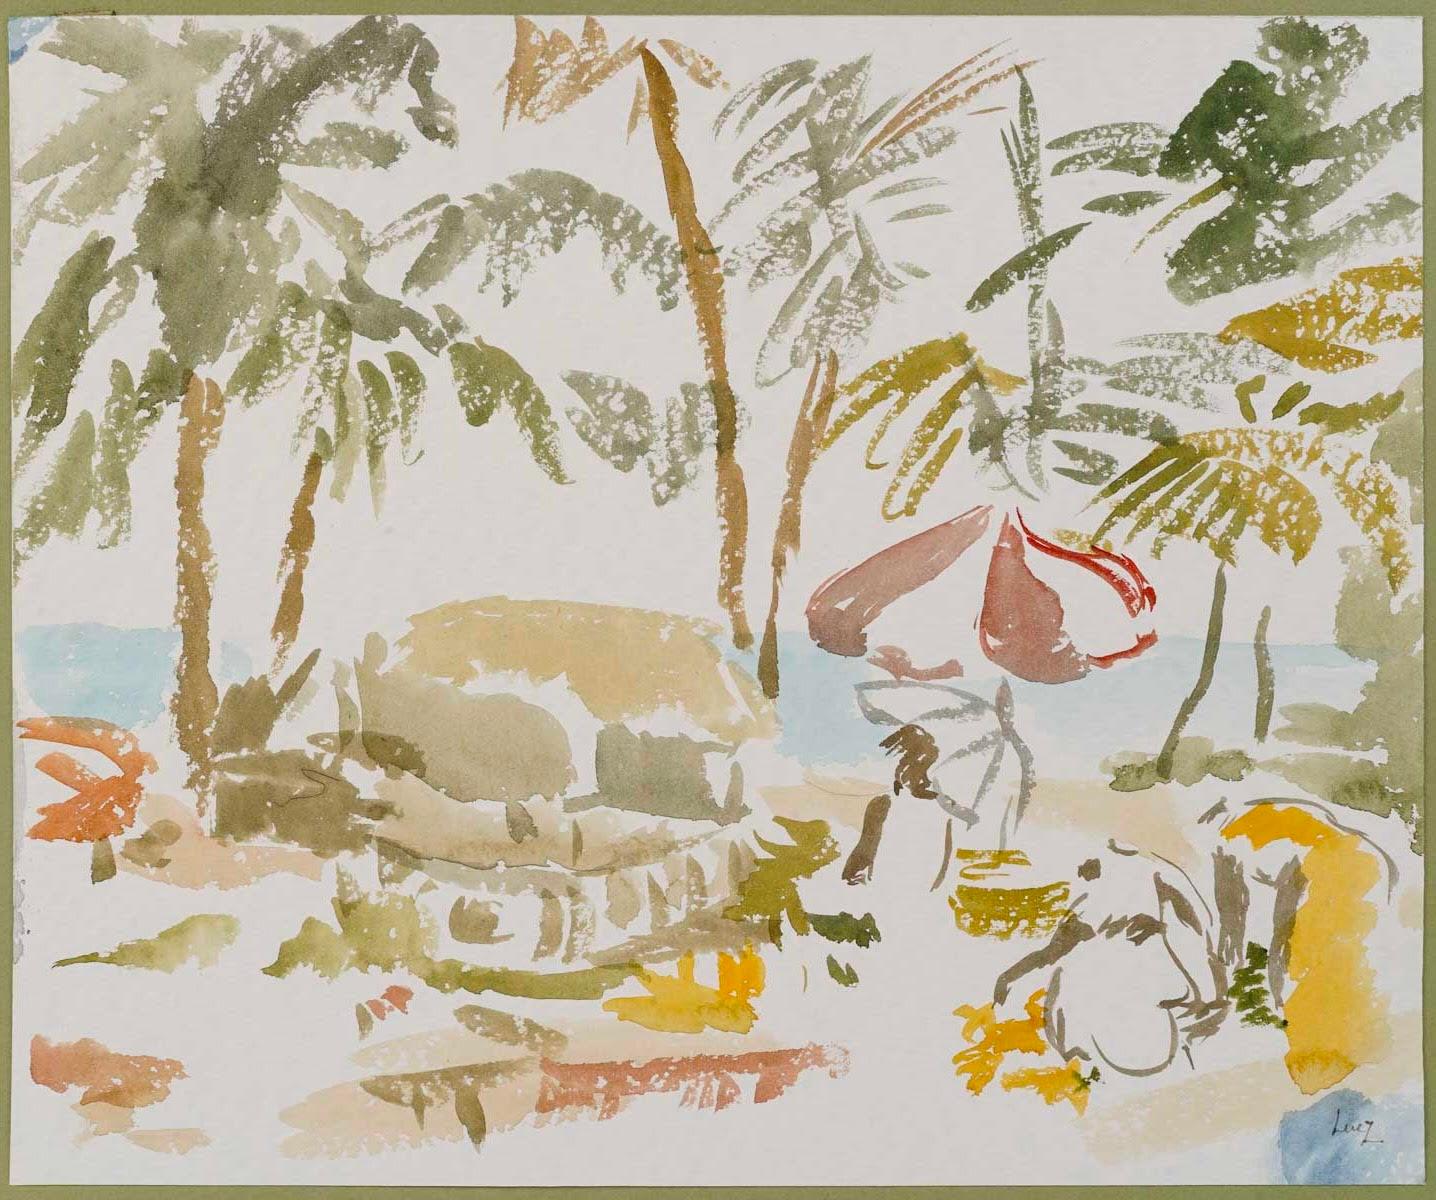 Watercolour by Evelyne Luez, 20th century.

Watercolour by Evelyne Luez depicting a beach and two people under a parasol, 20th century.
H: 36.5cm, W: 44cm, D: 0.2cm